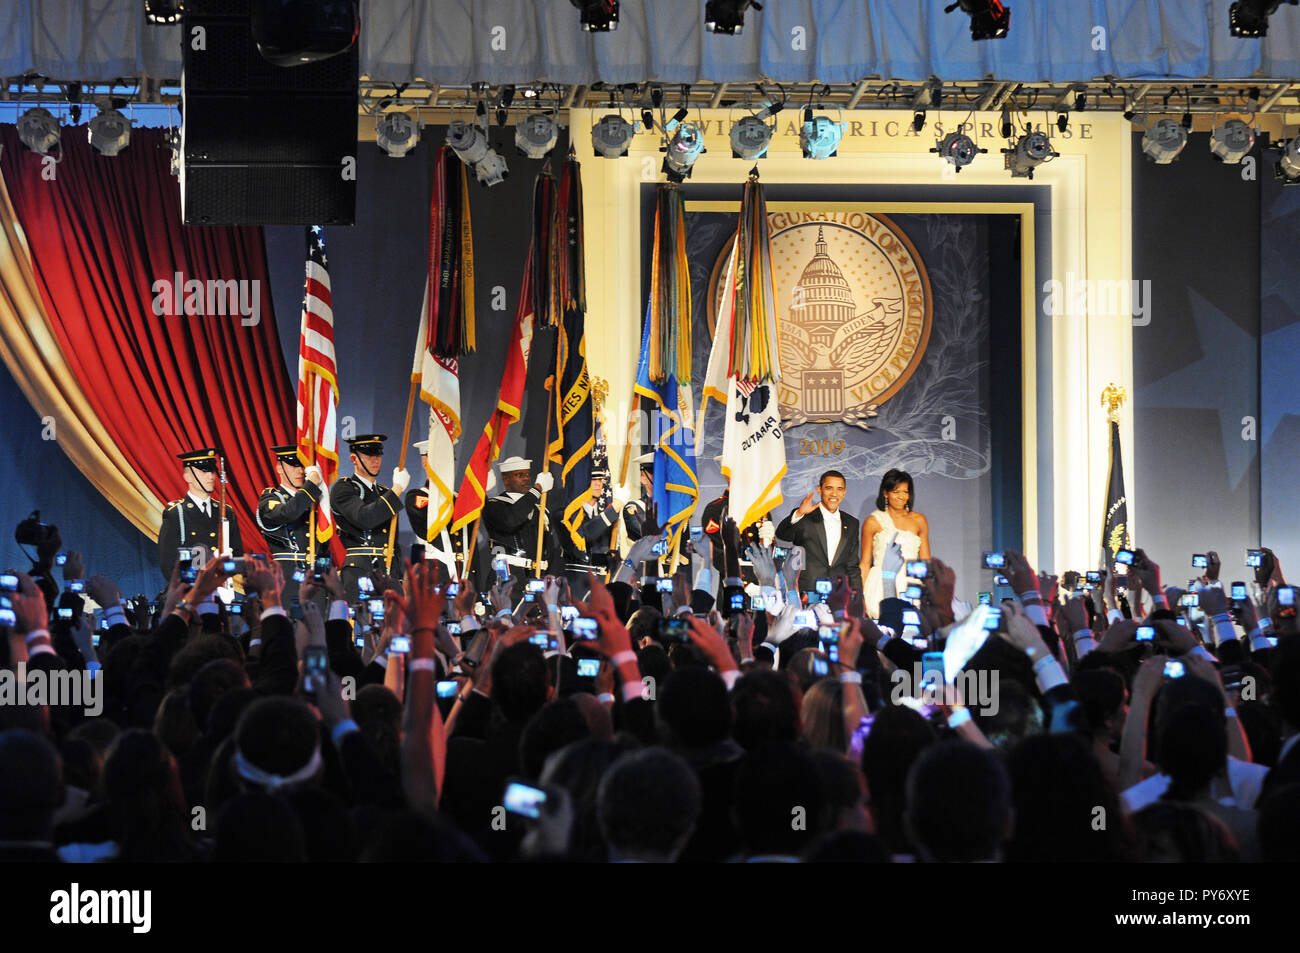 Il presidente Barack Obama e la first lady Michelle Obama arriva alla sfera della Gioventù nel centro cittadino di Washington D.C., 20 gennaio, 2009. Foto di Affari pubblici Specialist 1a classe Kyle Niemi, U.S. Coast Guard Foto Stock